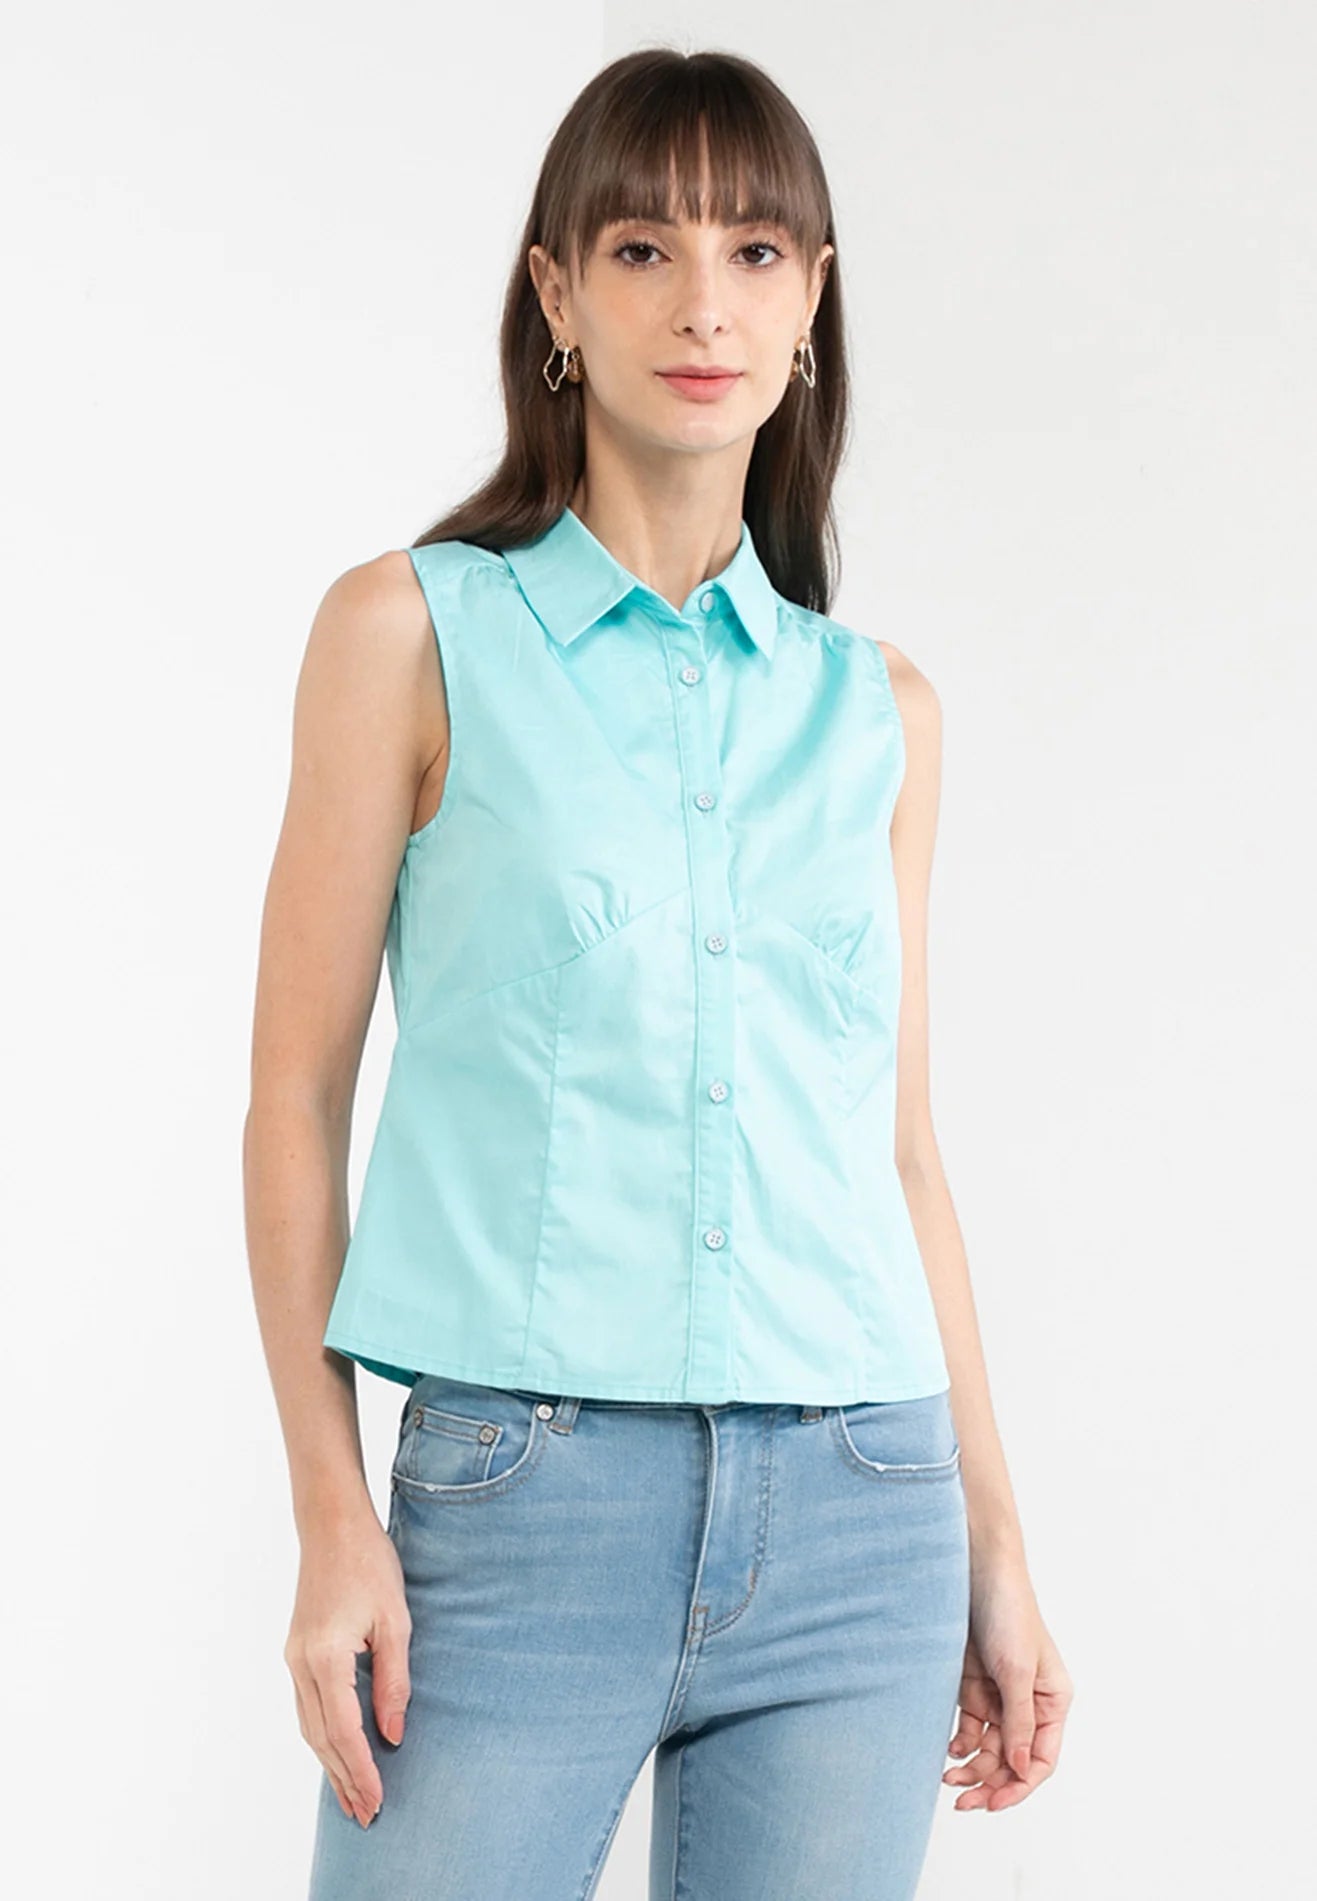 ELLE Apparel Sleeveless Collar Button Up Shirt